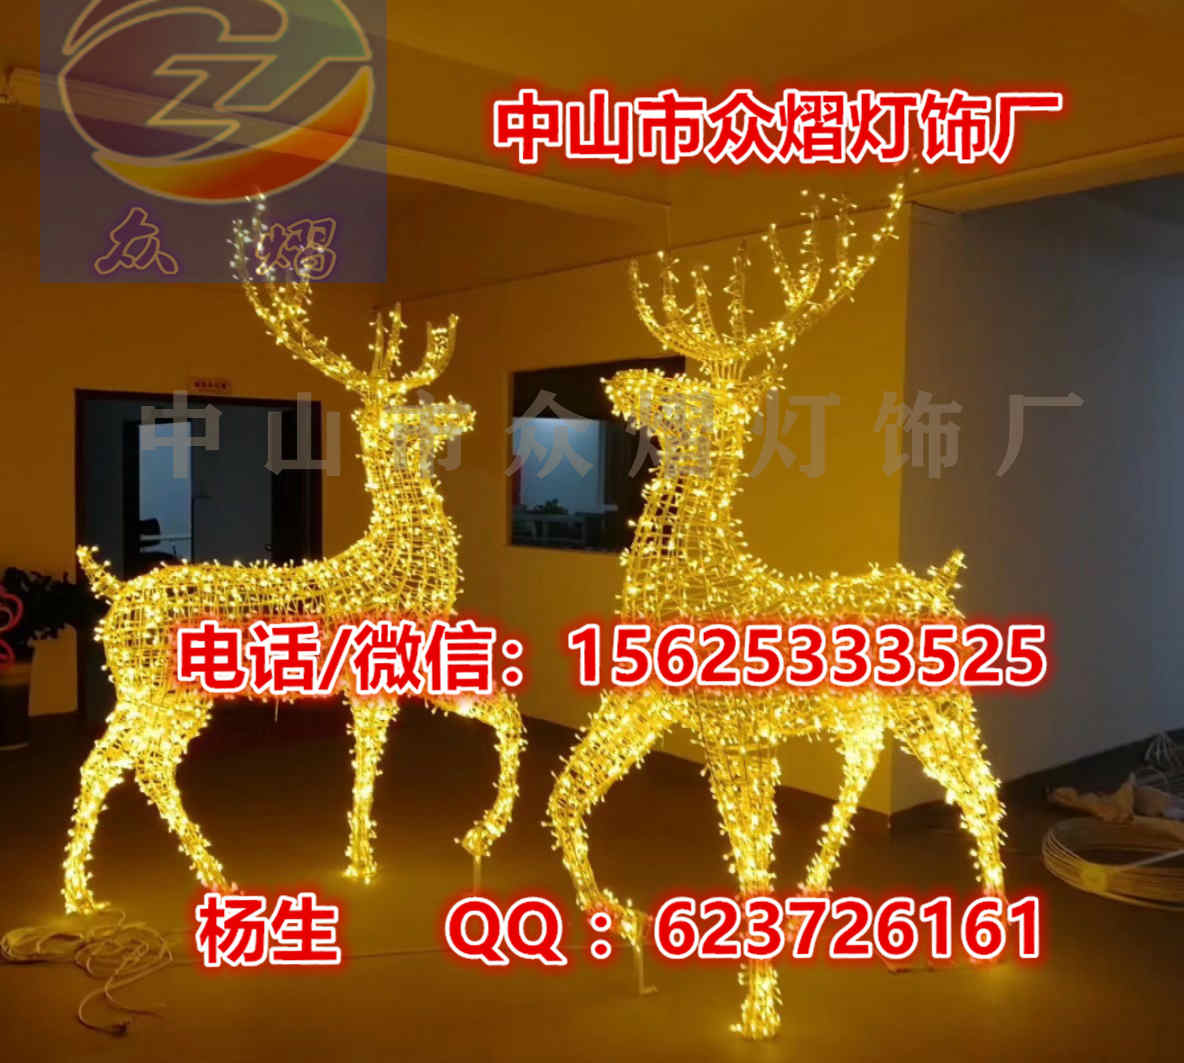 中山市圣诞节马拉车 立体雪人造型灯厂家3D滴胶造型灯 圣诞节马拉车 立体雪人造型灯 节日装饰灯